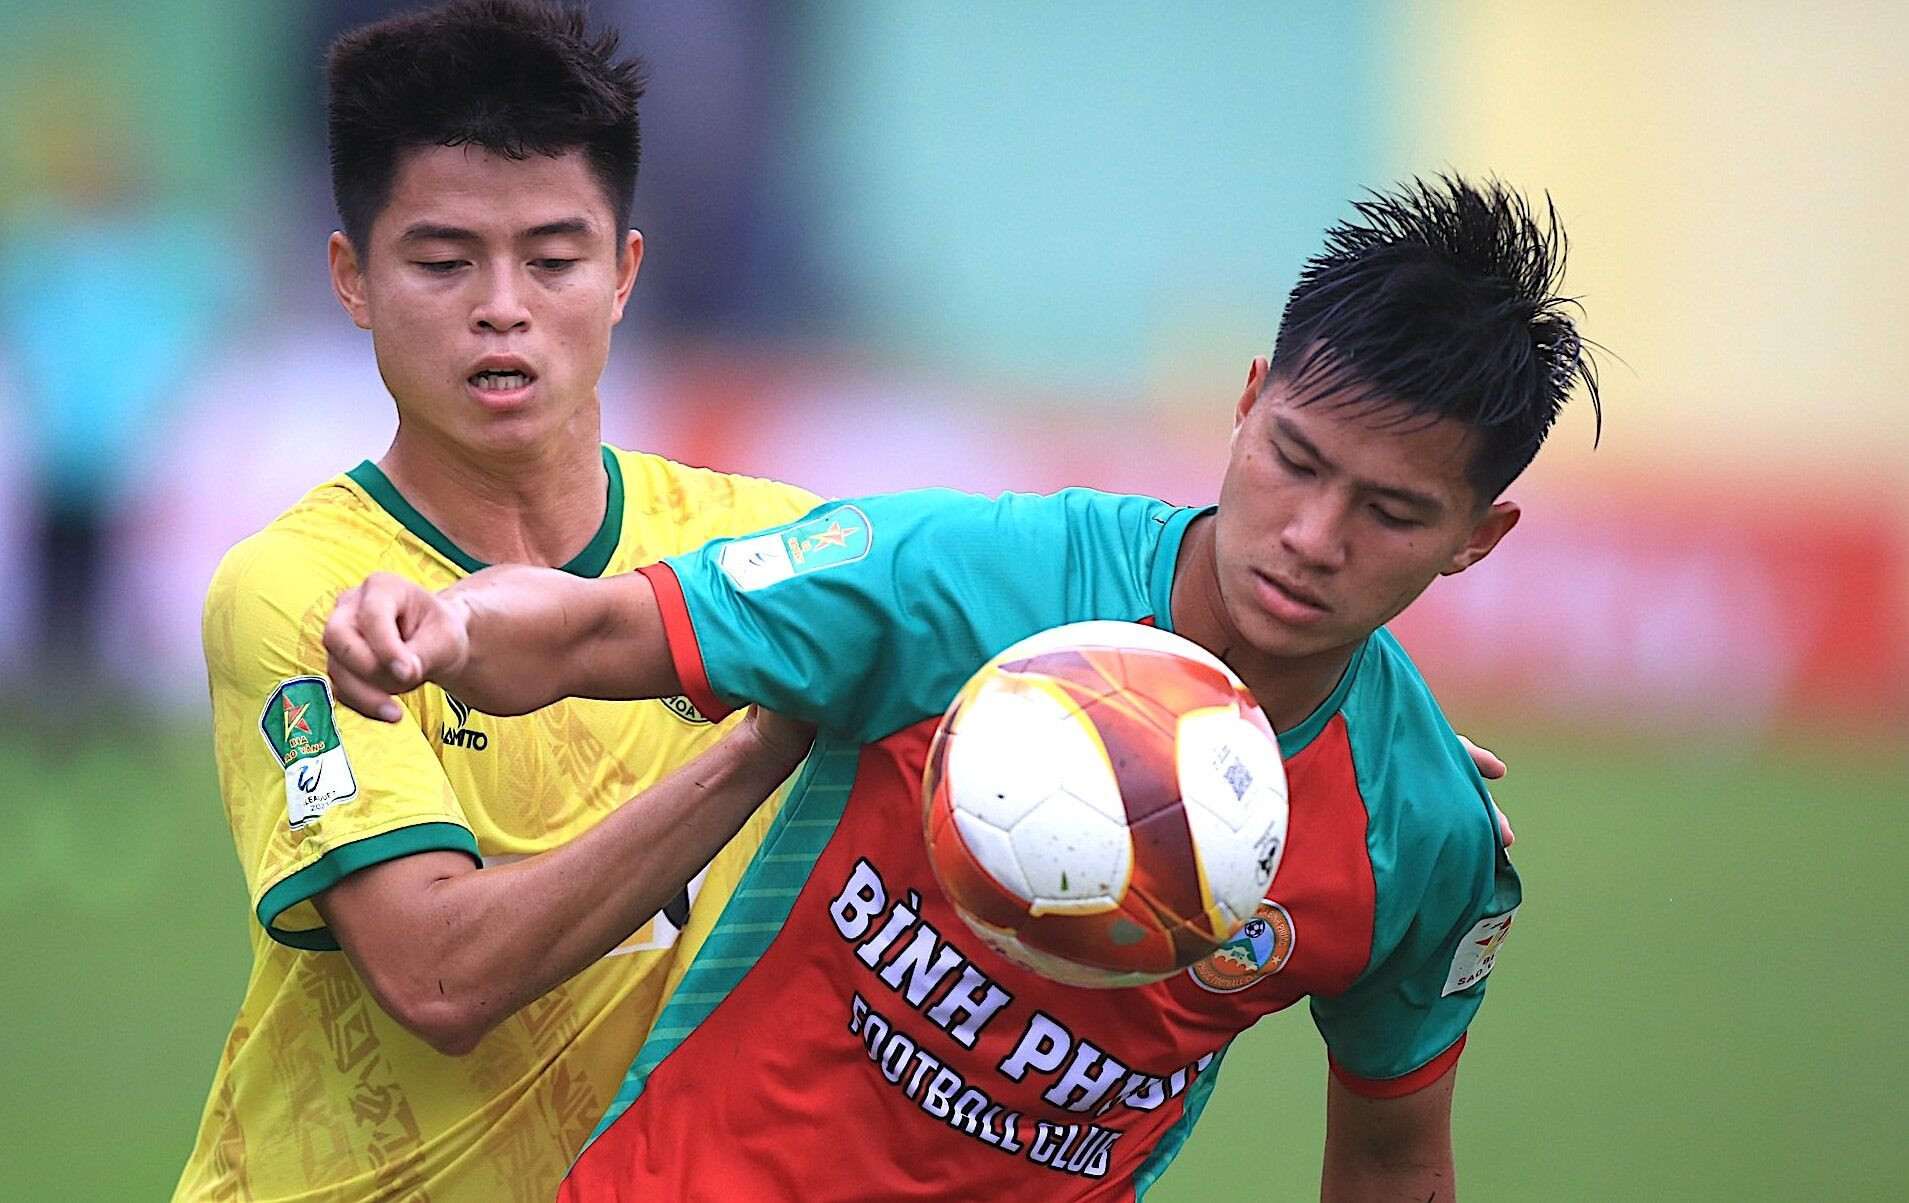 Đá 3 trận bị thanh lý hợp đồng, cựu tuyển thủ U23 Việt Nam sốc nặng - 1